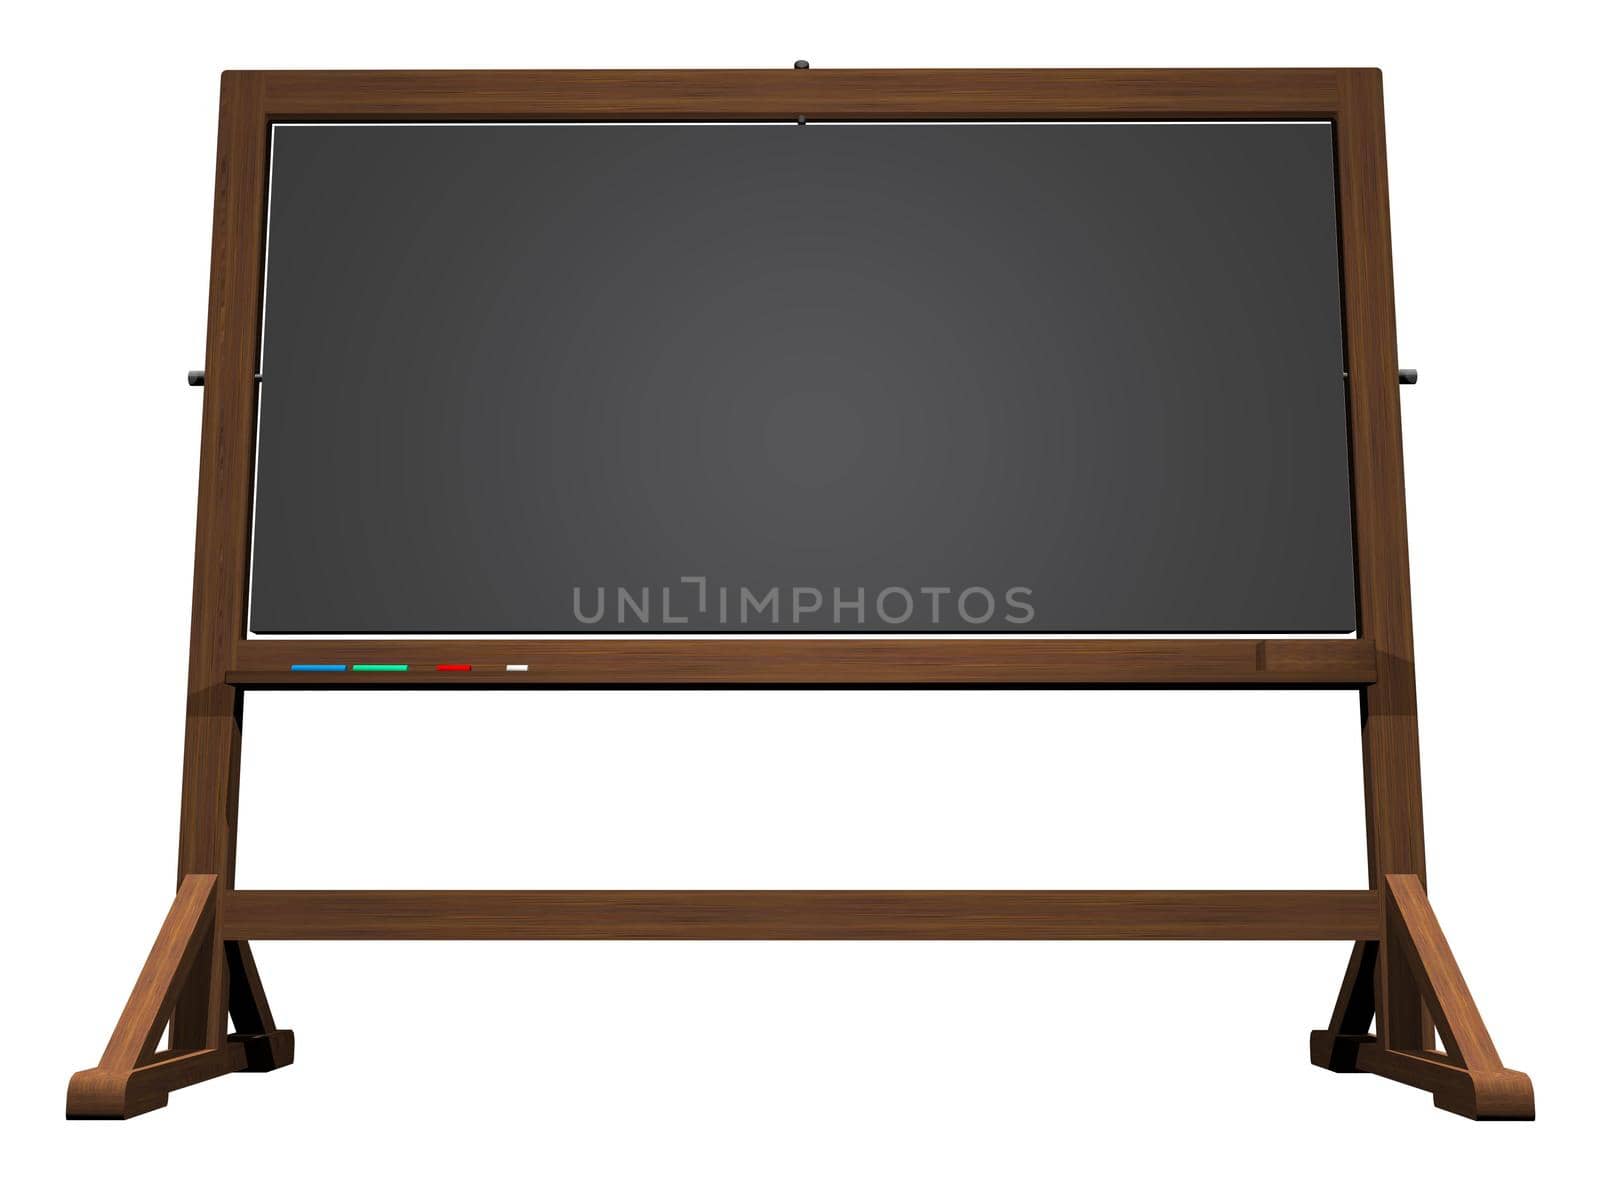 School blackboard - 3D render by Elenaphotos21